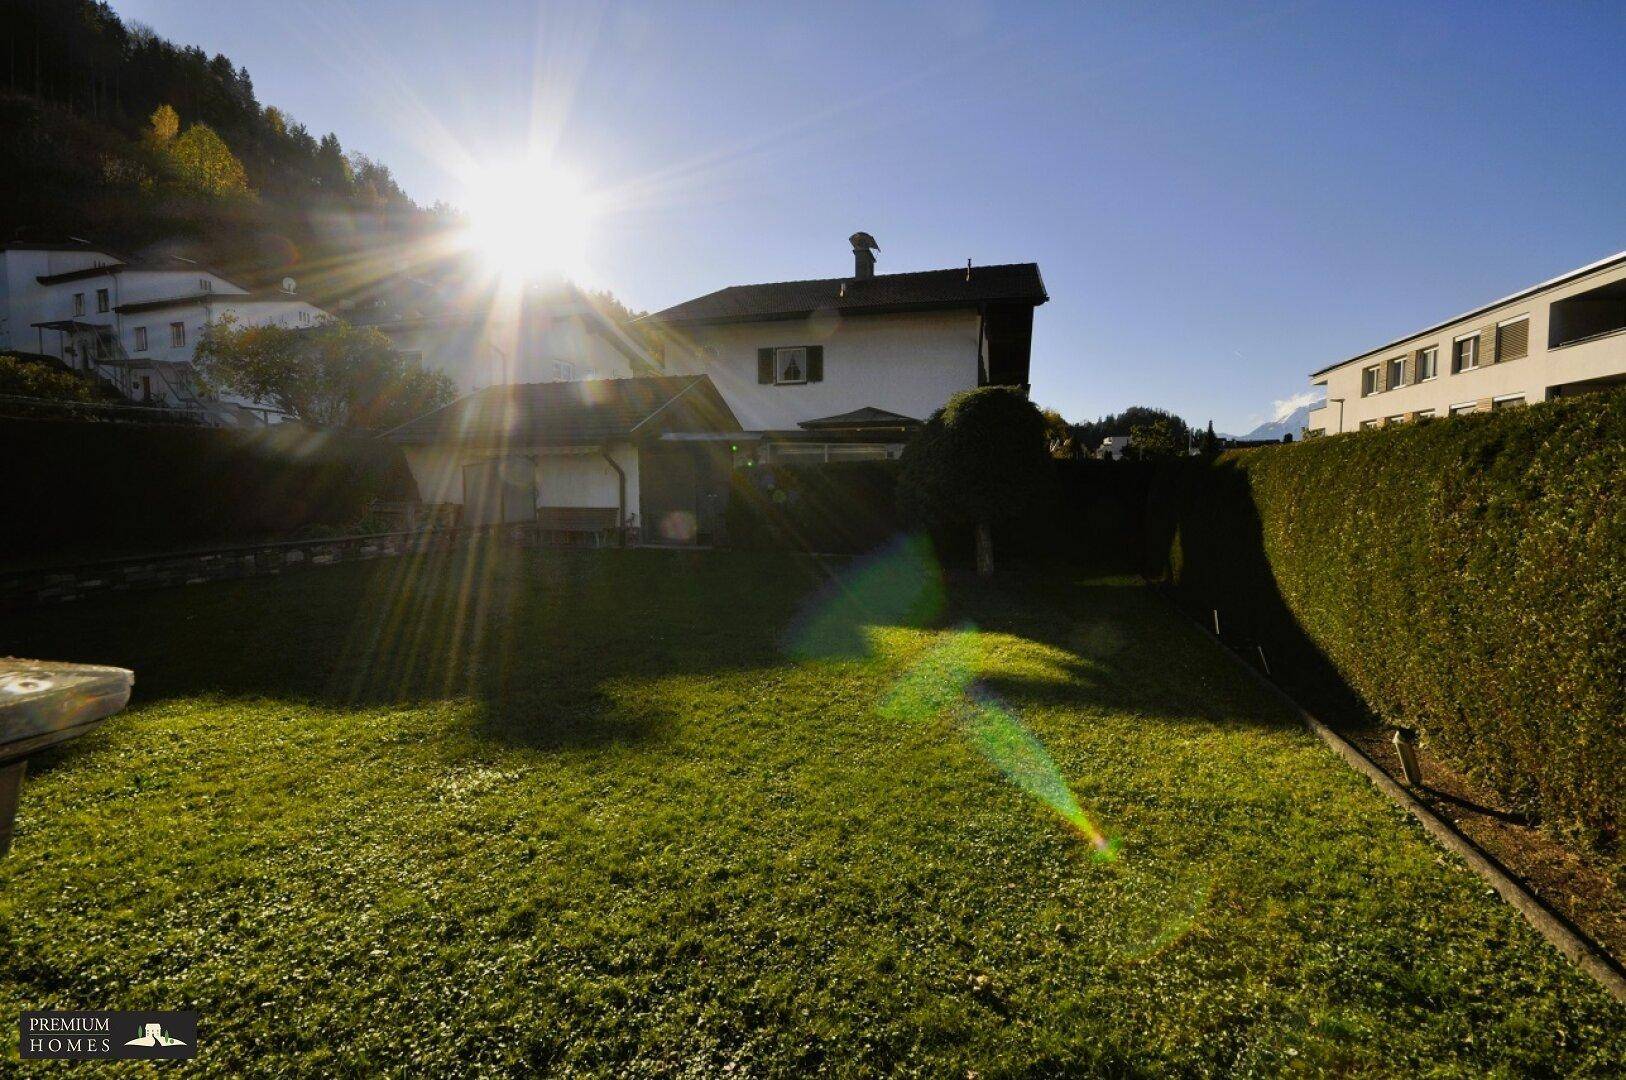 Gepflegtes Mehrfamilienhaus in Wattens - Lichteinfall auf die Grünfläche